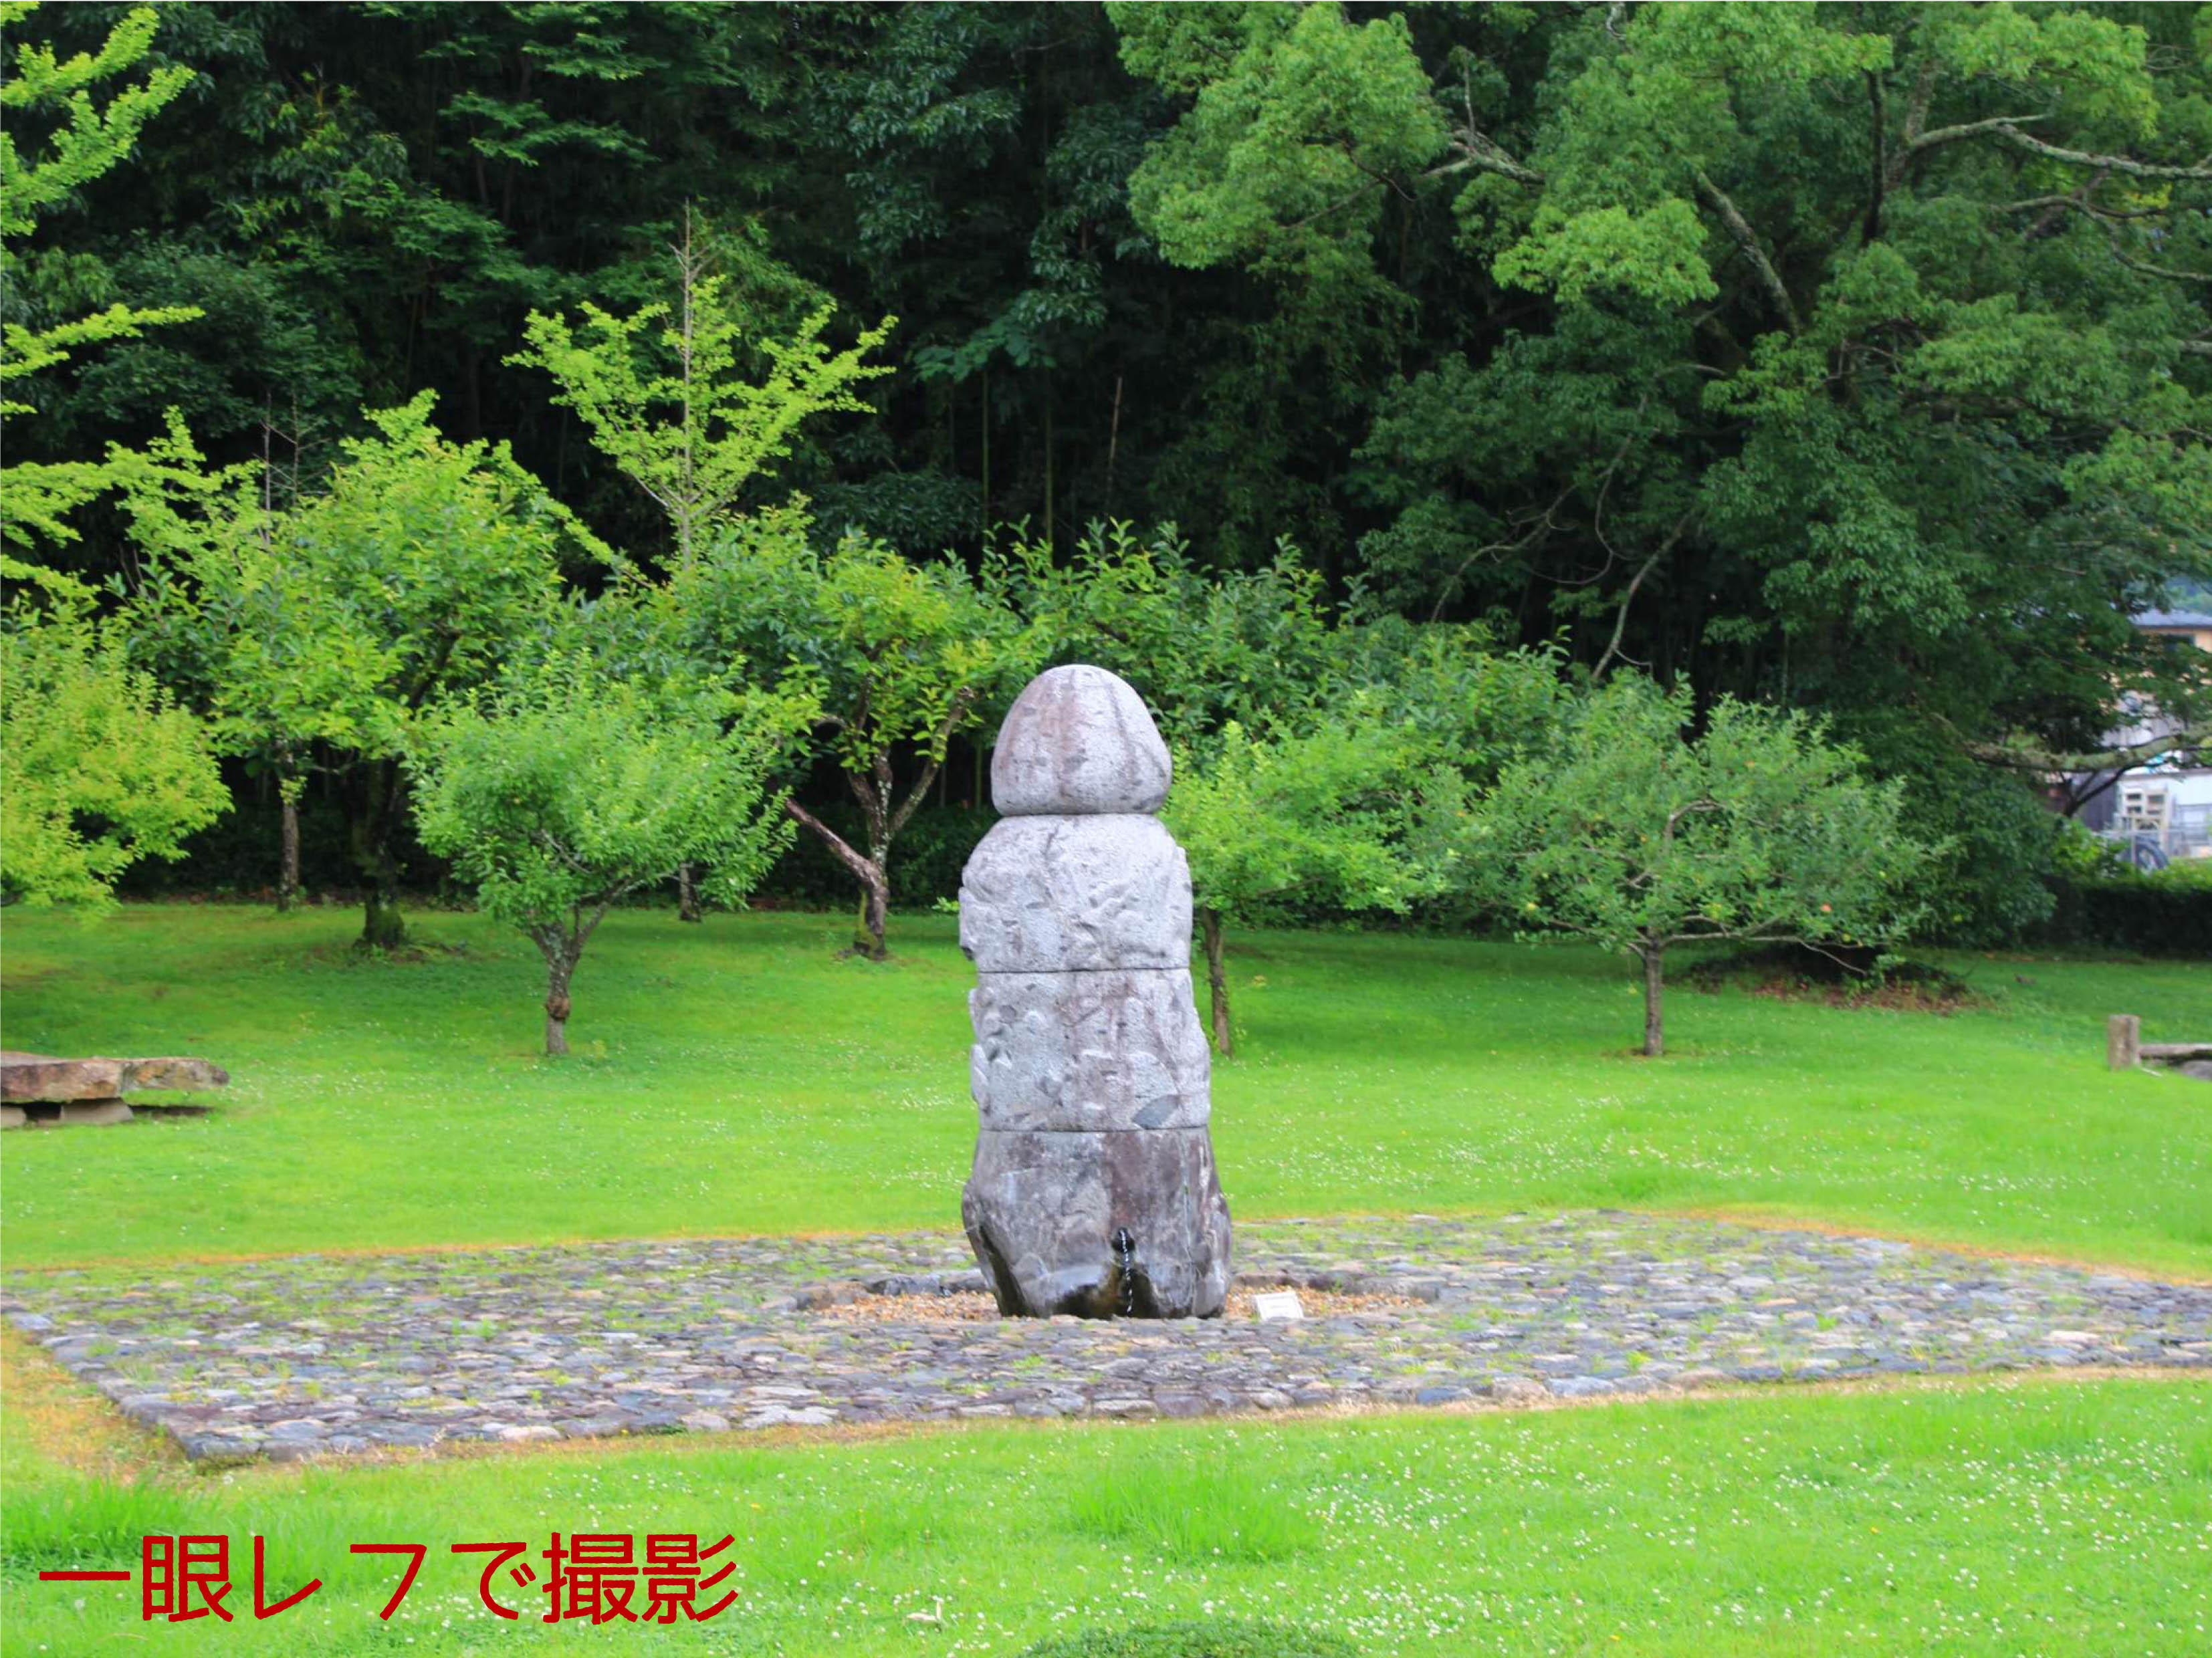 一眼レフカメラで撮った庭園の須弥山石"